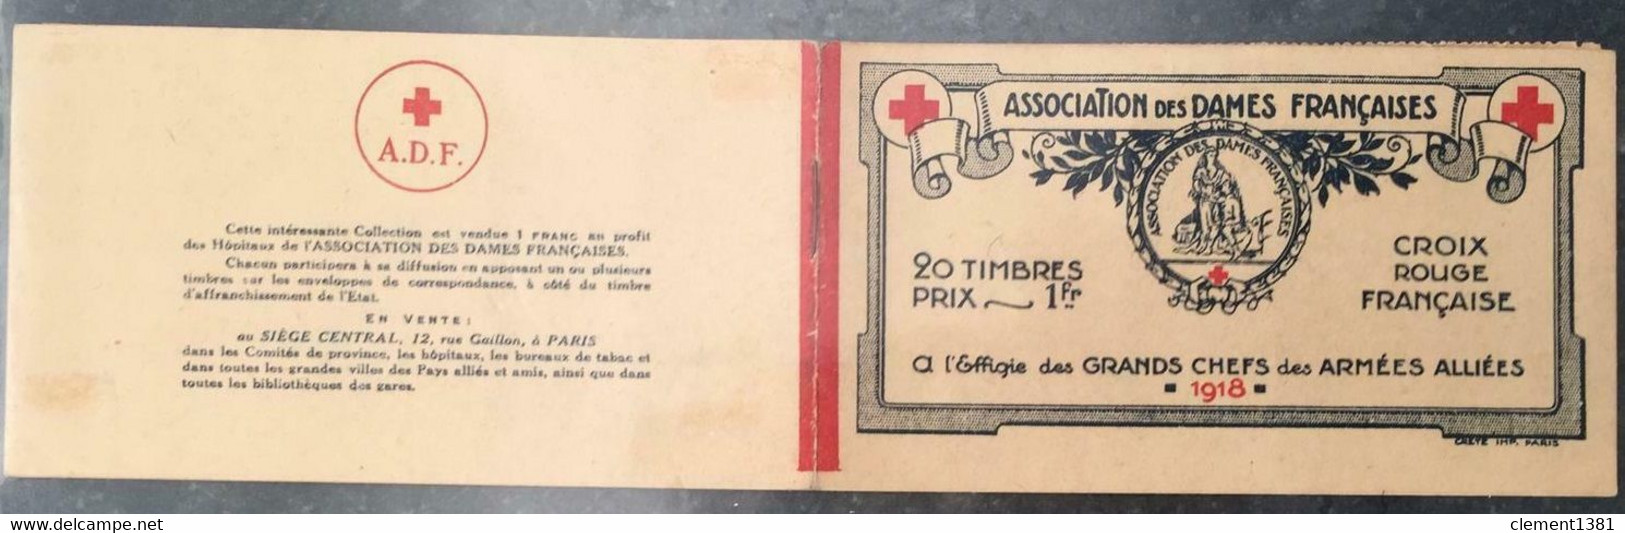 FRANCE MILITARIA VIGNETTES CROIX ROUGE 1914/18 CARNET ASSOCIATION DES DAMES FRANÇAISES 20 TIMBRES ERINNOPHILIE - Red Cross